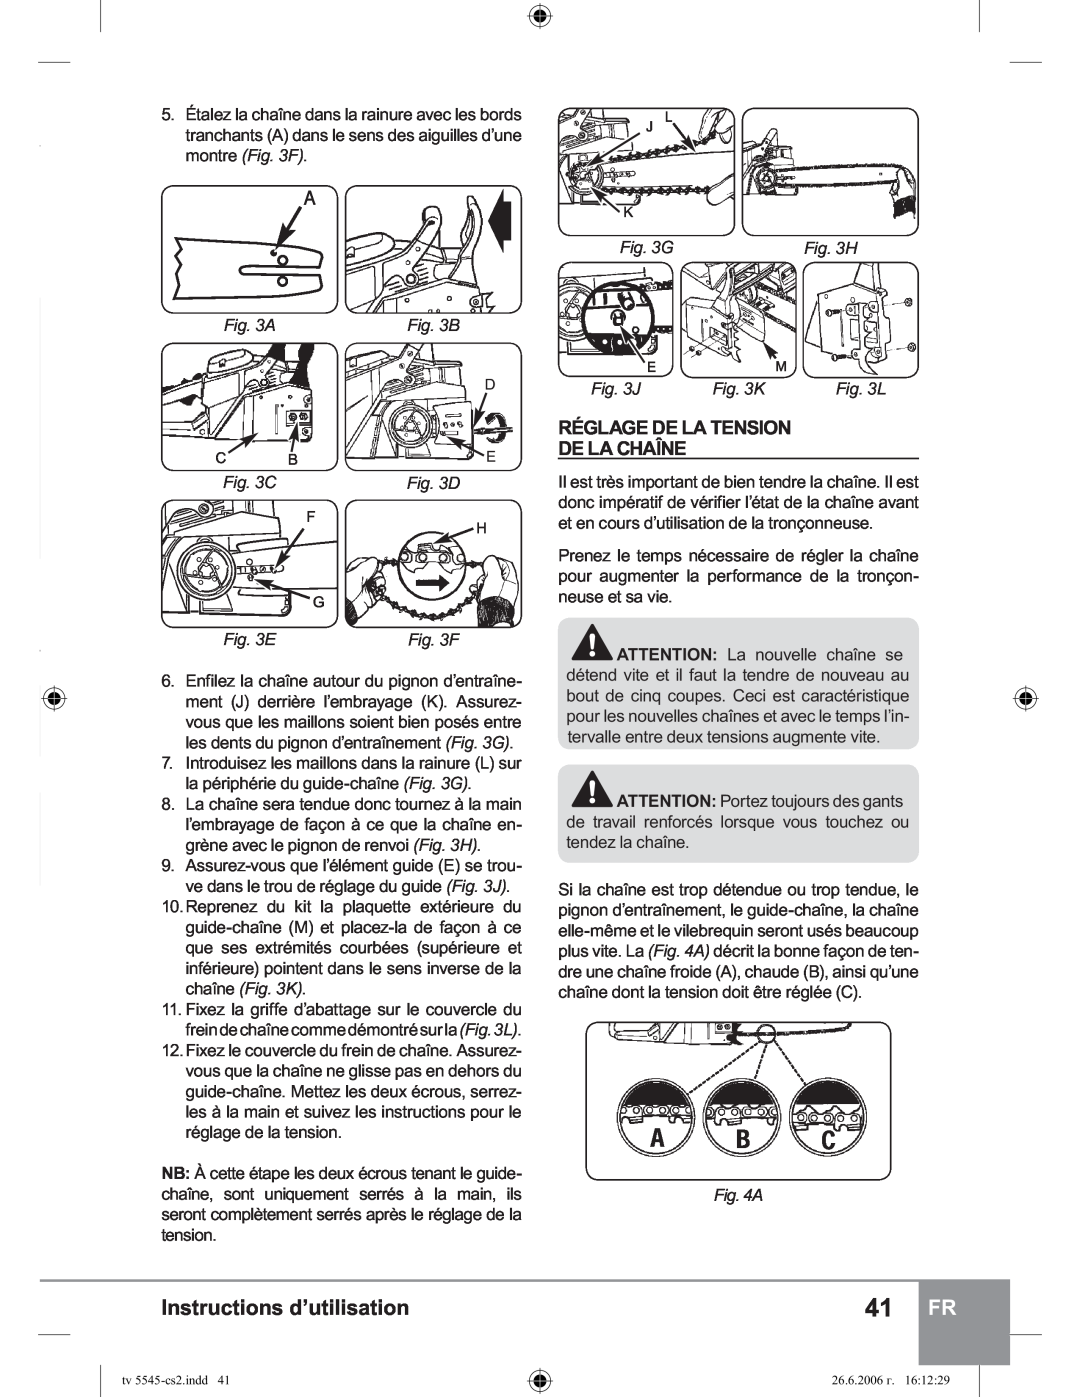 Sparky Group TV 5545 manual Réglage De La Tension De La Chaîne, Instructions d’utilisation, G, A, E, J, K, H, B, F 